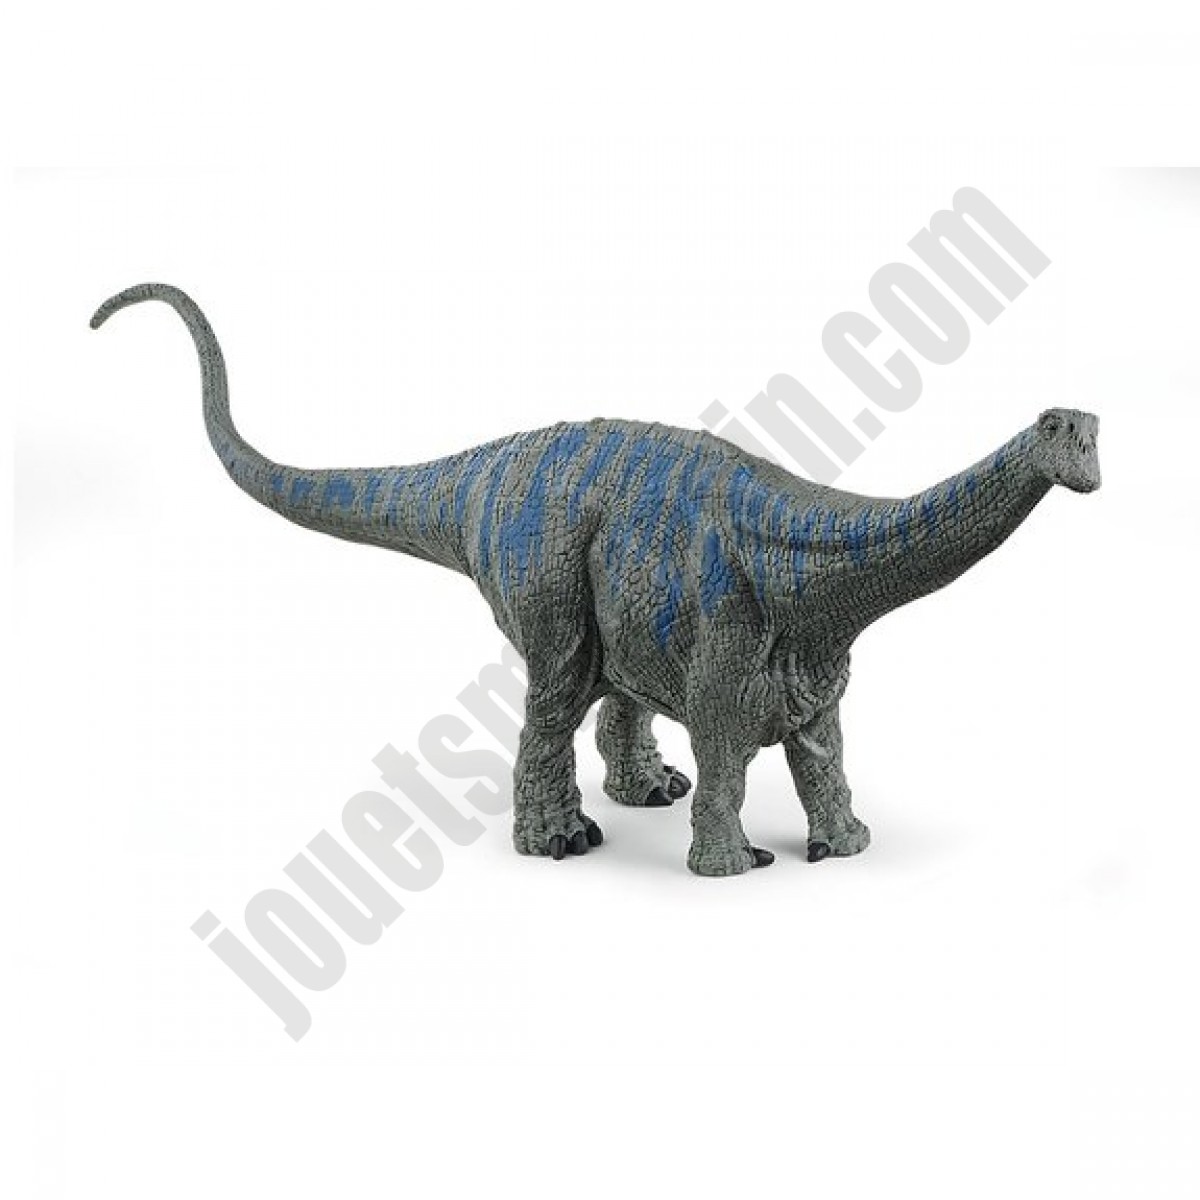 Nouveauté Figurine Brontosaure - déstockage - Nouveauté Figurine Brontosaure - déstockage